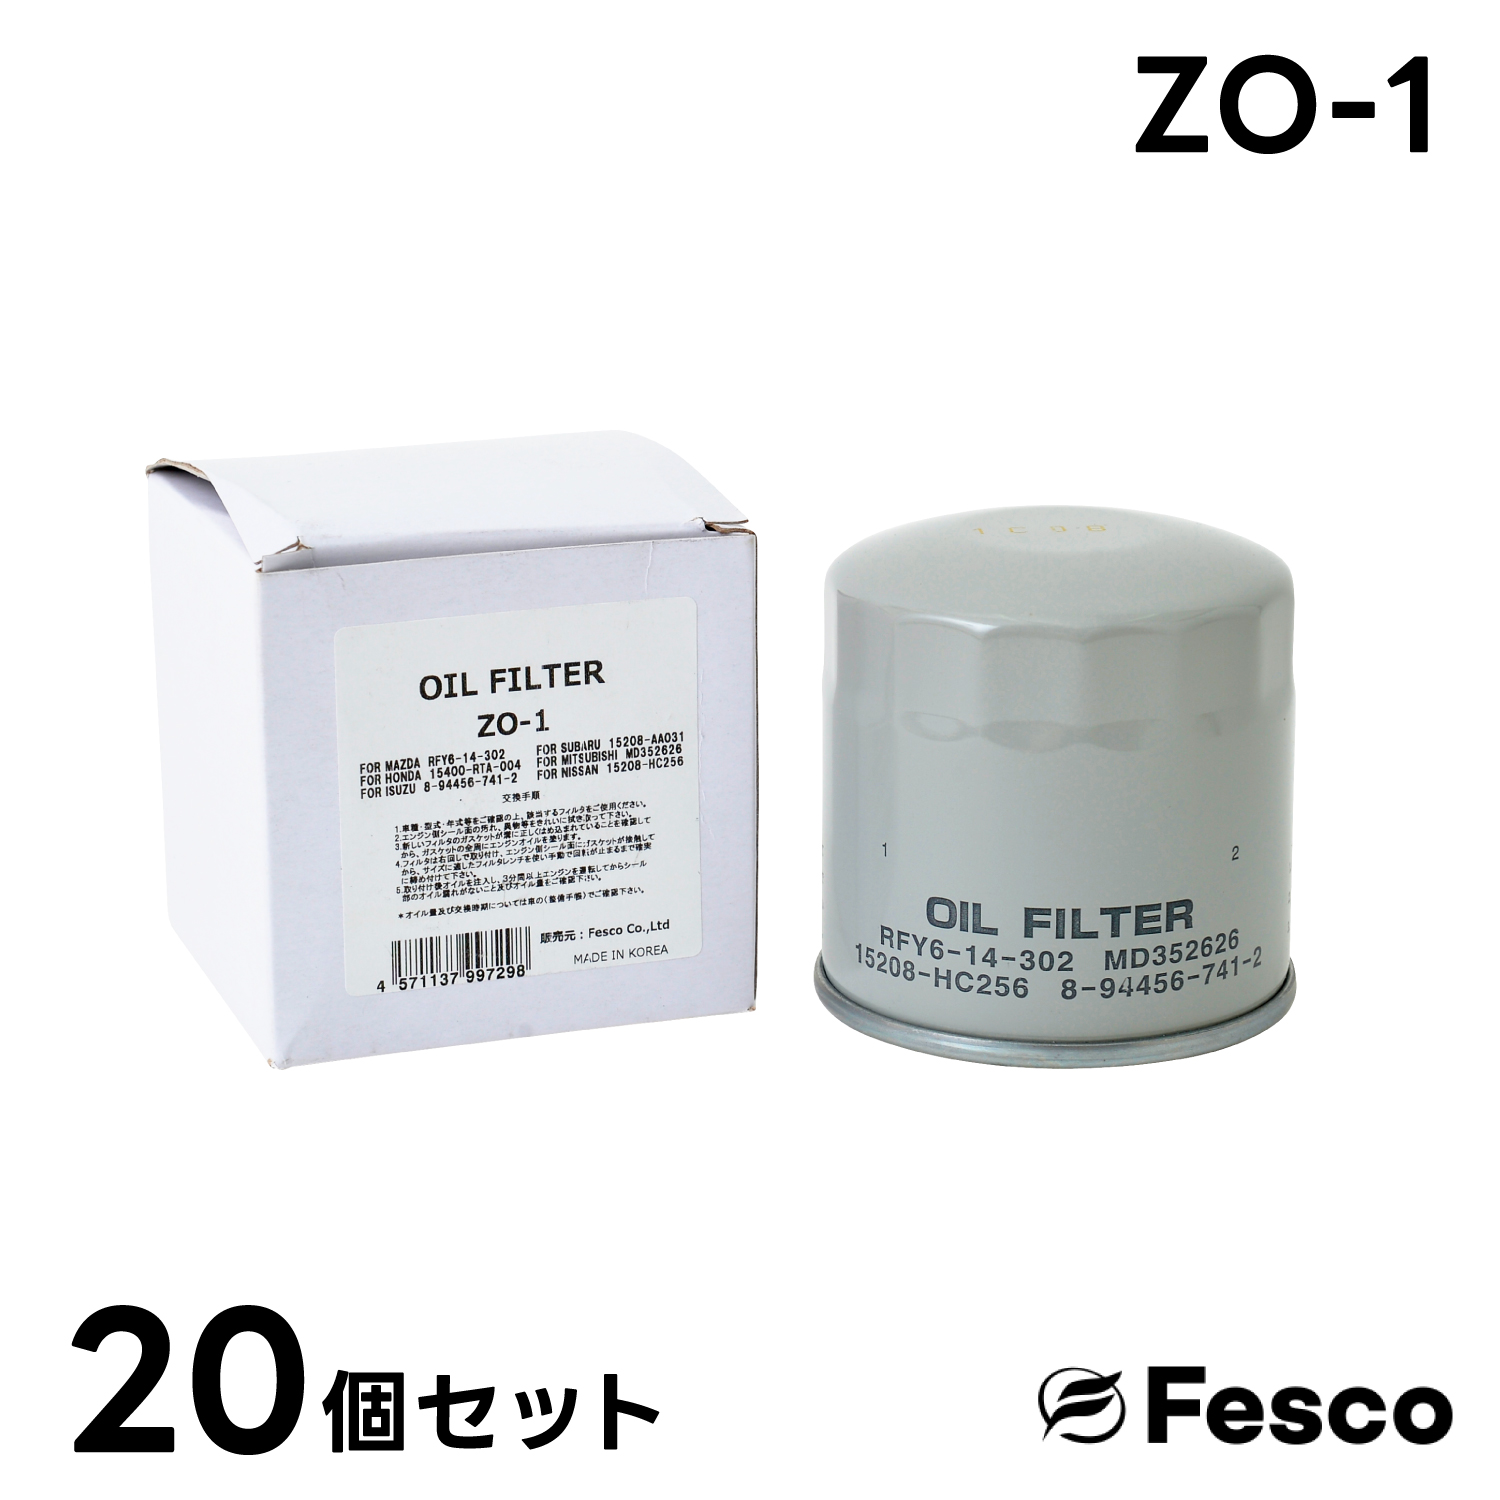 (20個セット)ZO-1 オイルフィルター マツダ・日産 オイルエレメント FESCO RFY6-14-302 15208-HC301 AY100-HN022｜rca